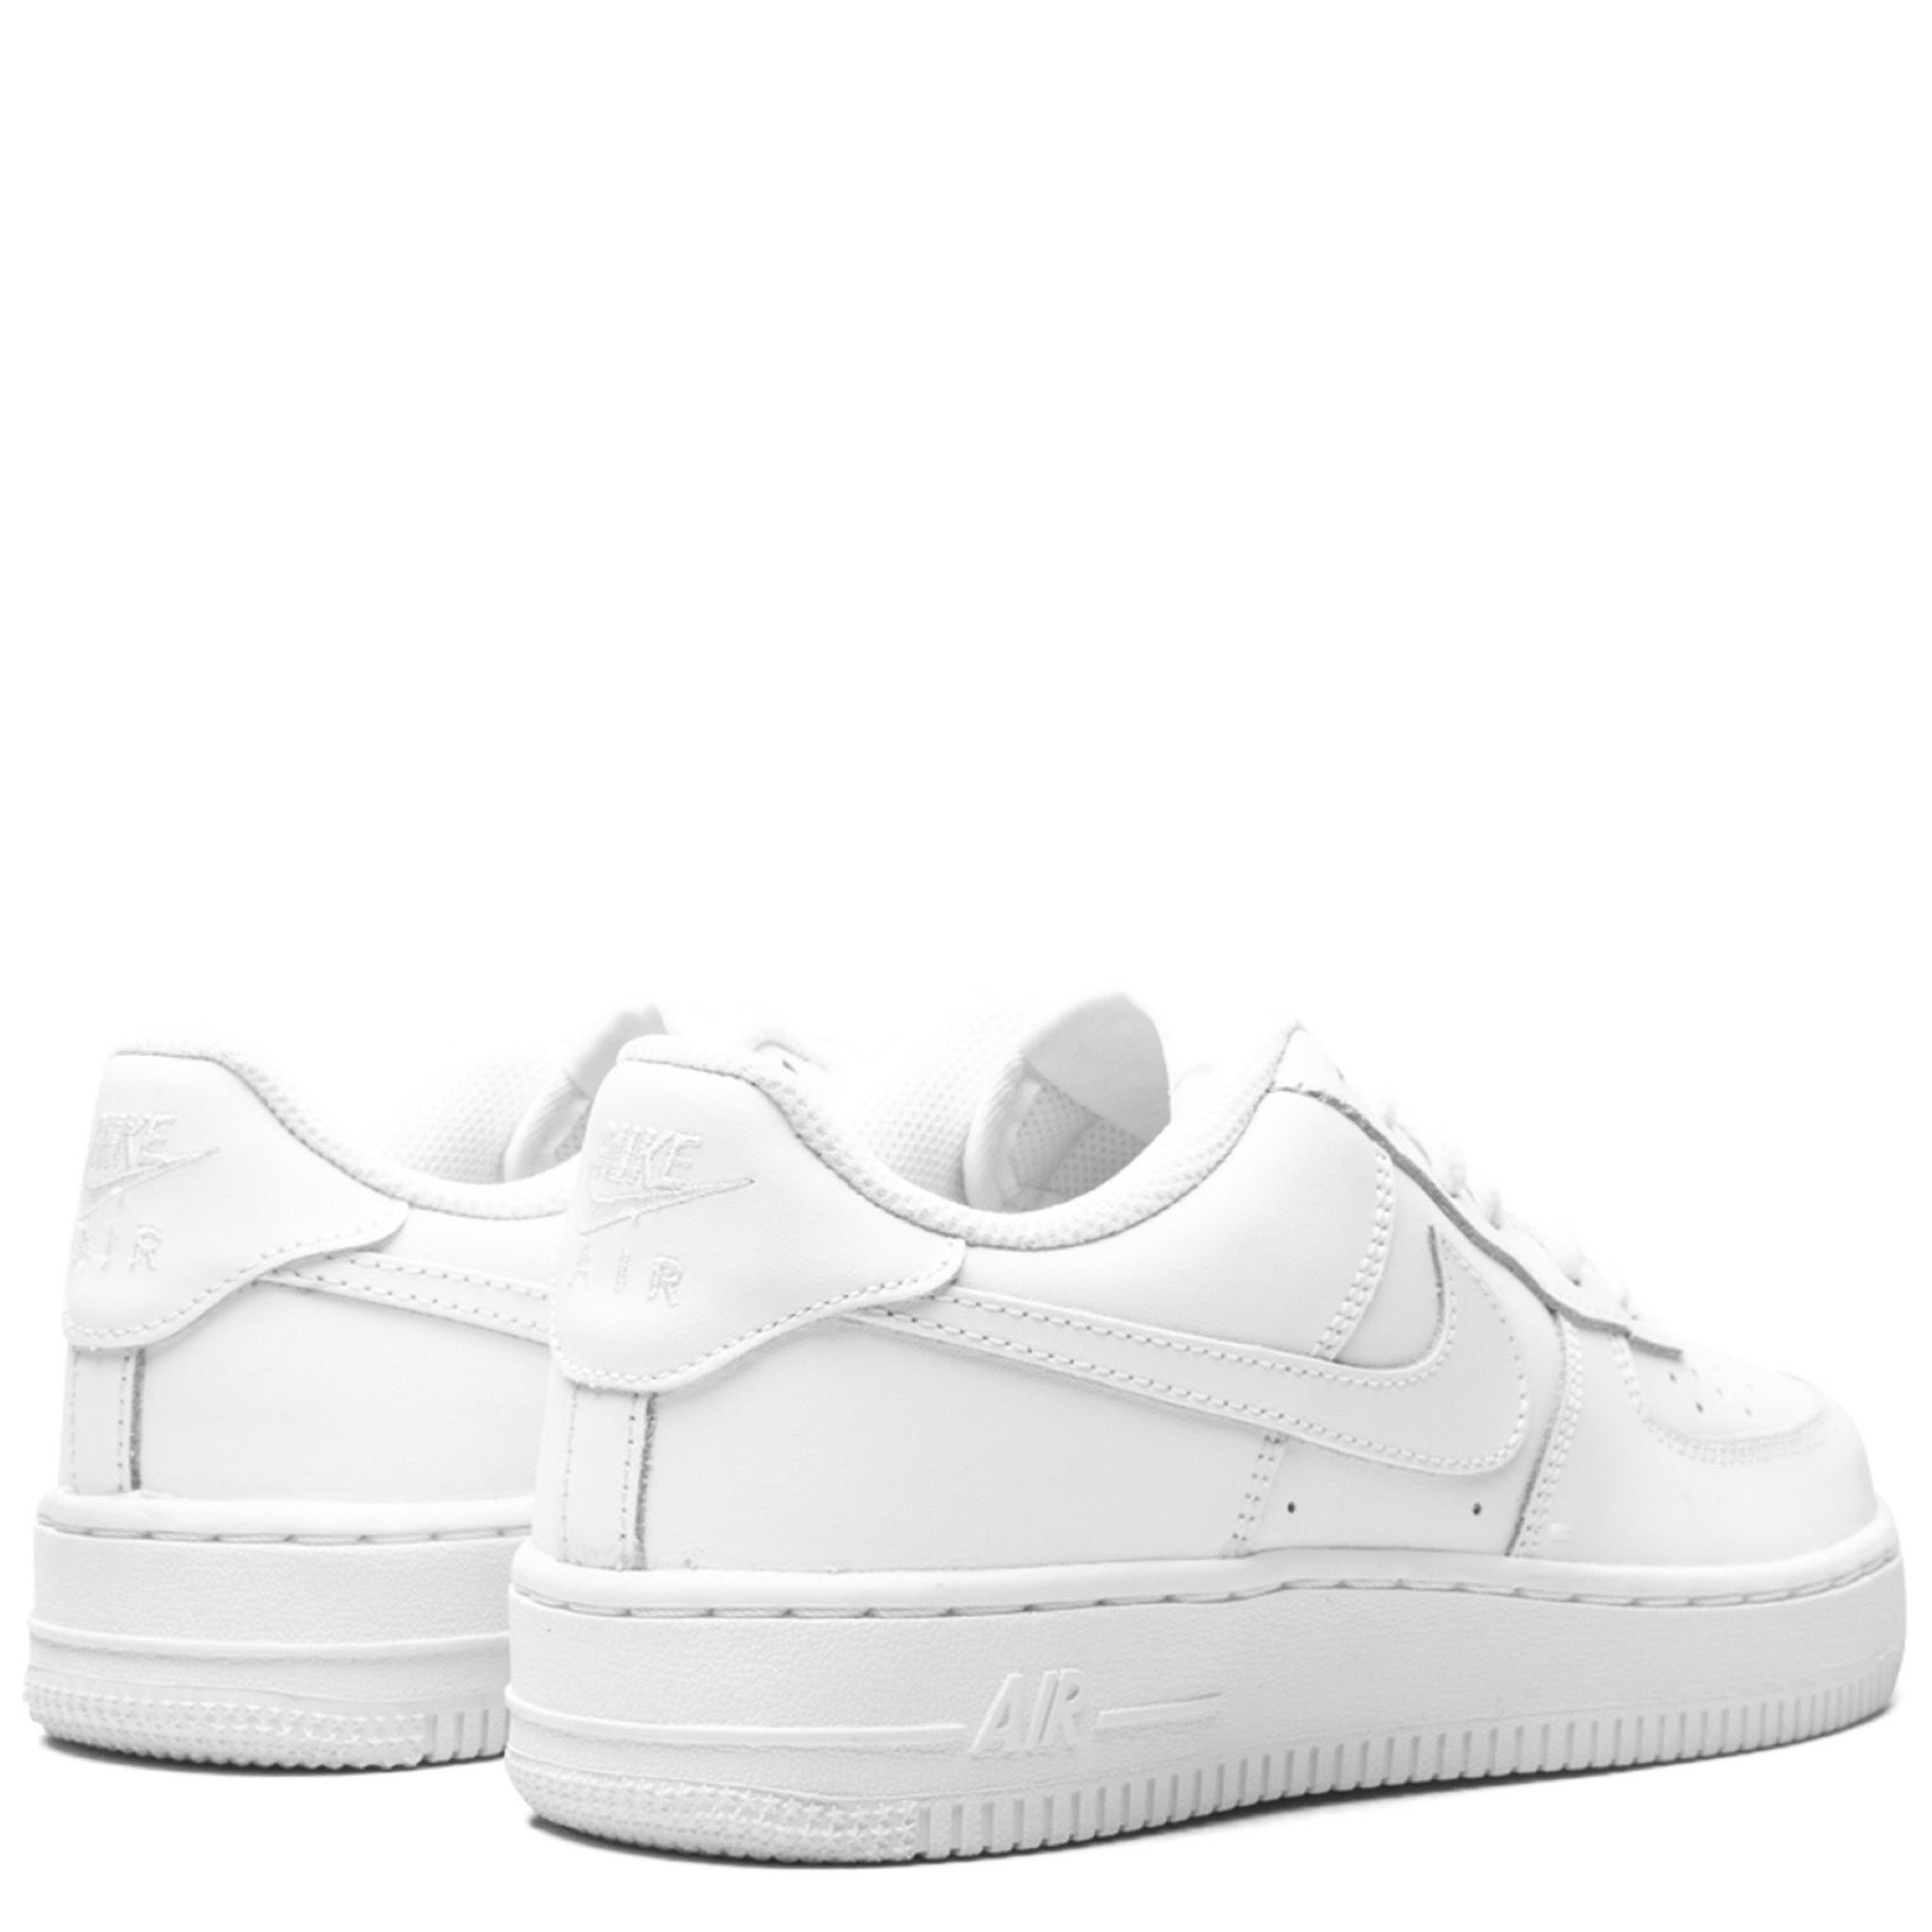 Shoes, Nigo Duck Trainer White Men Shoes 51bcolore Size 1